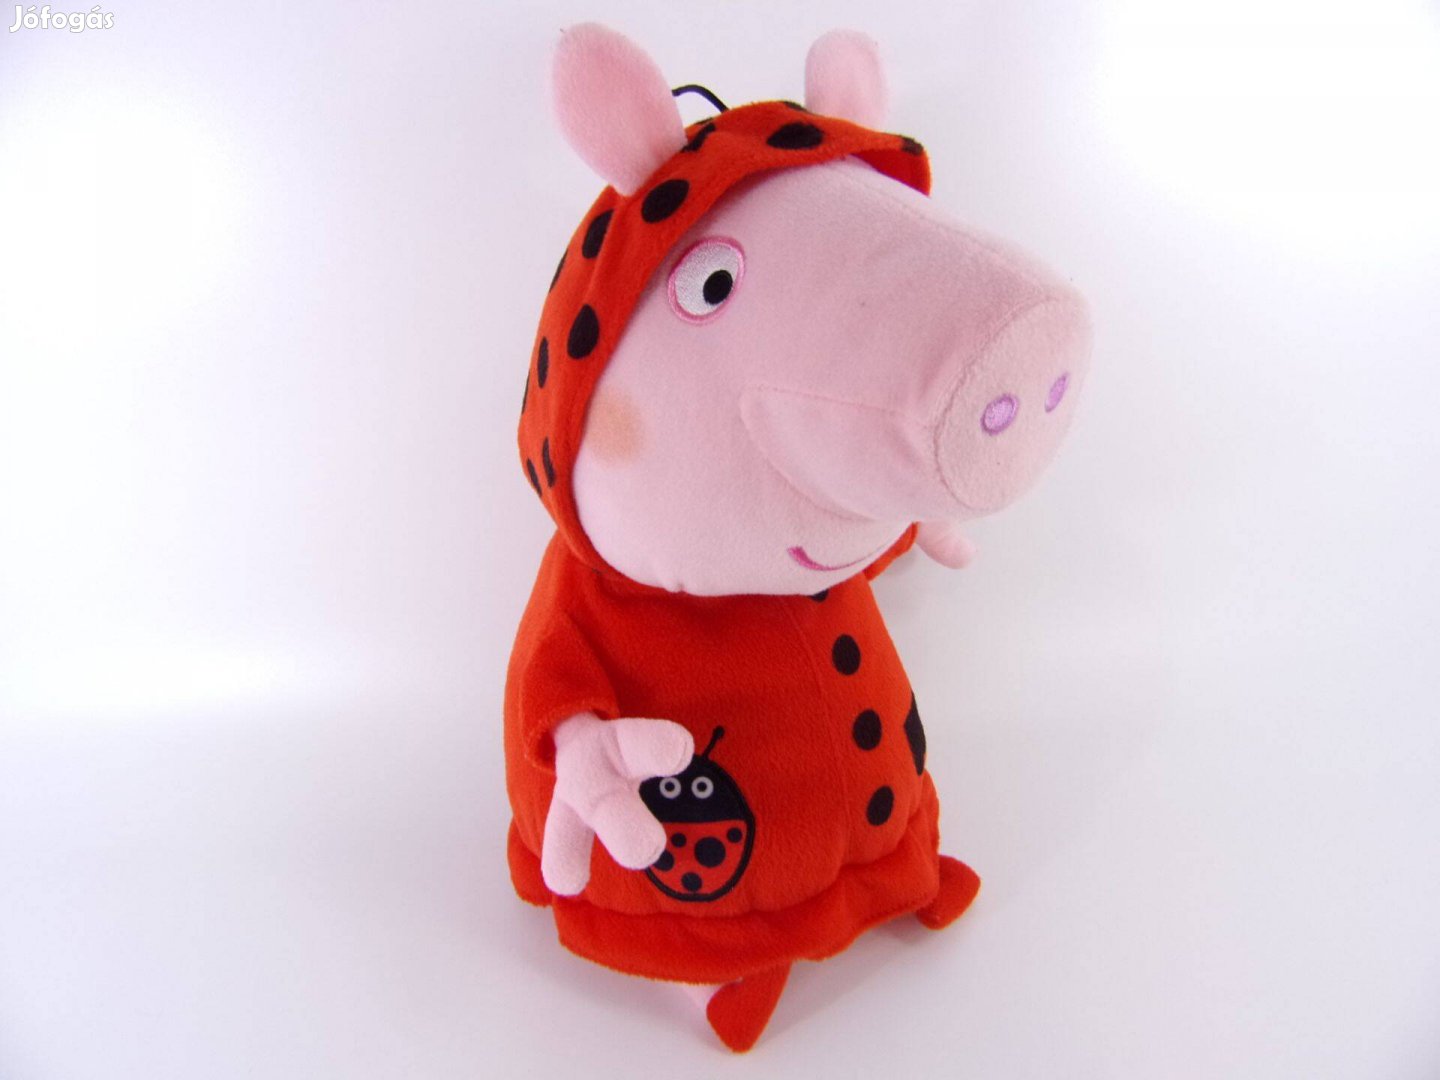 Peppa Pig malac katica ruhás plüss figura